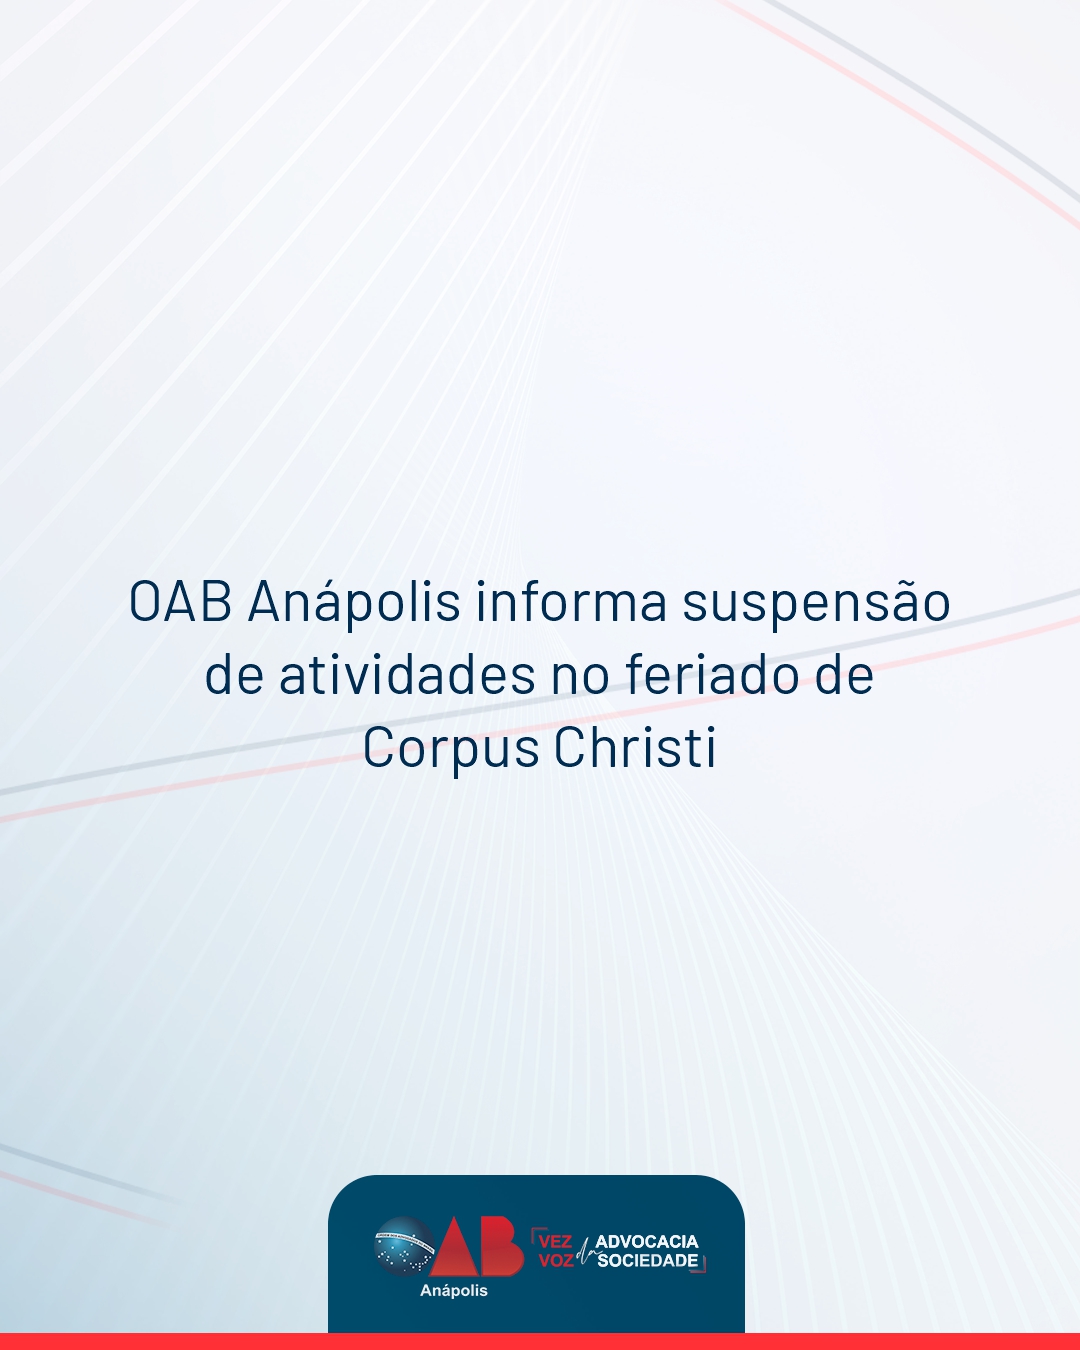 OAB Anápolis informa suspensão de atividades no feriado de Corpus Christi